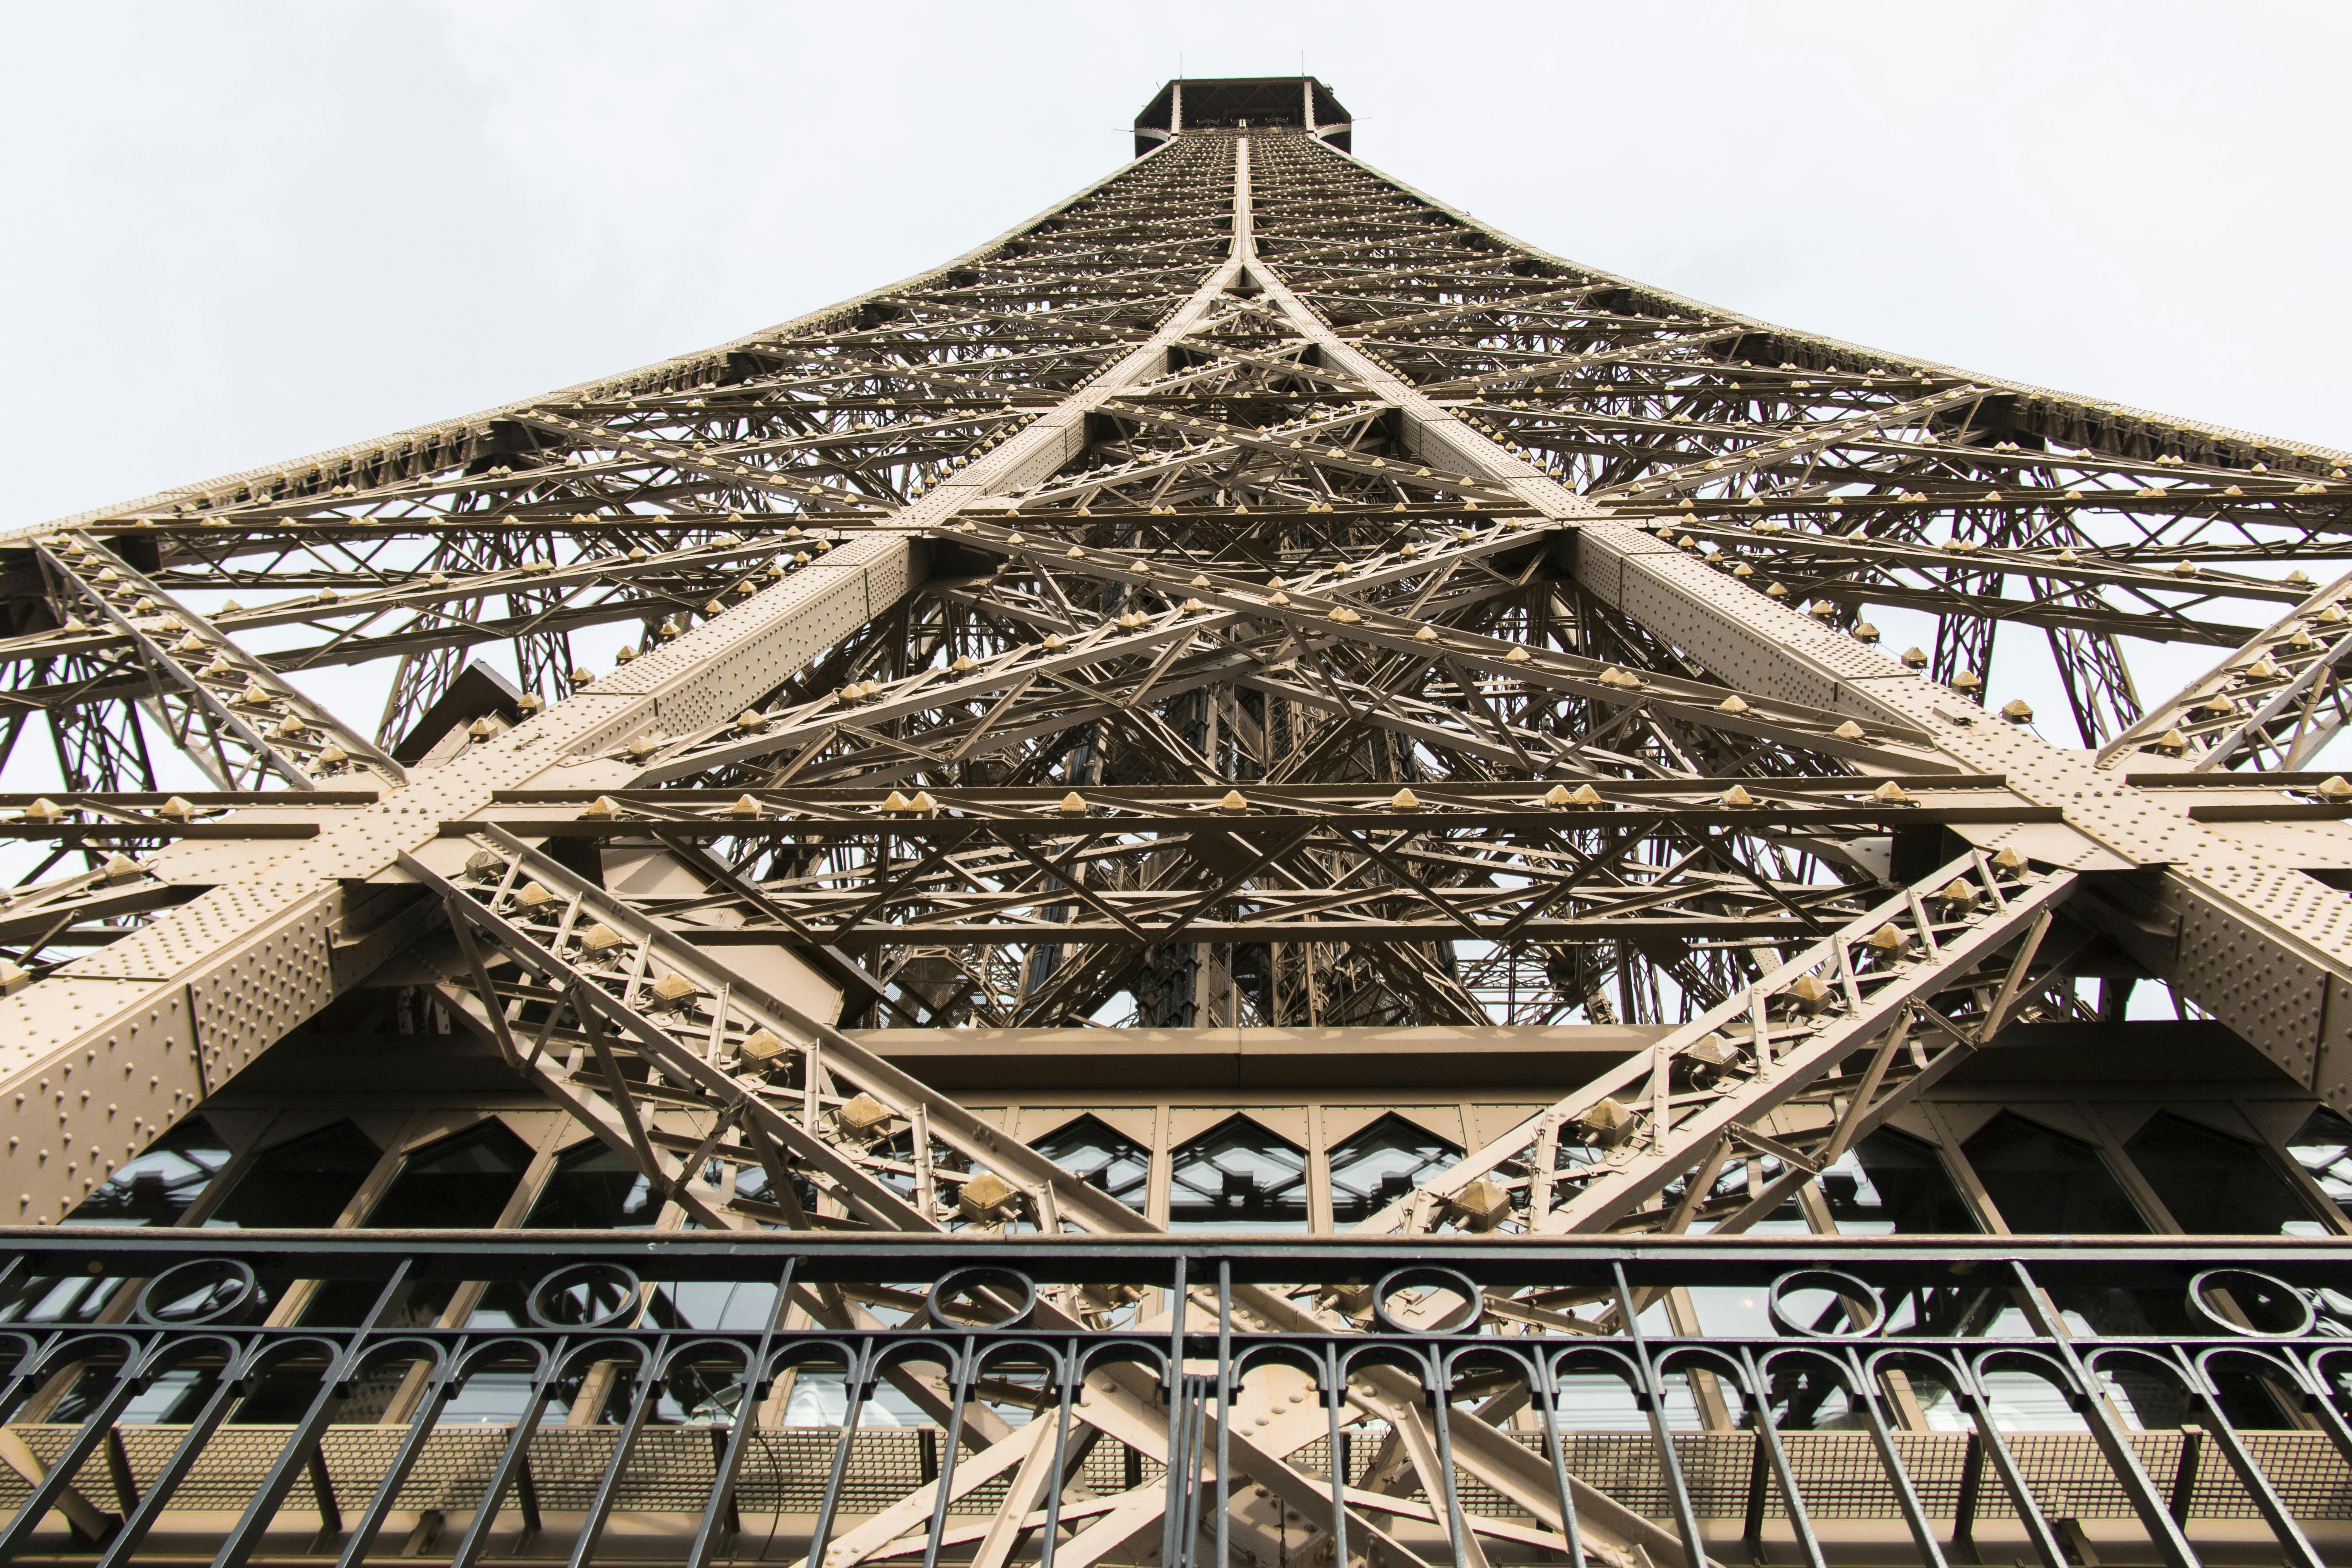 Billets à accès prioritaire pour le sommet de la tour Eiffel avec un hôte